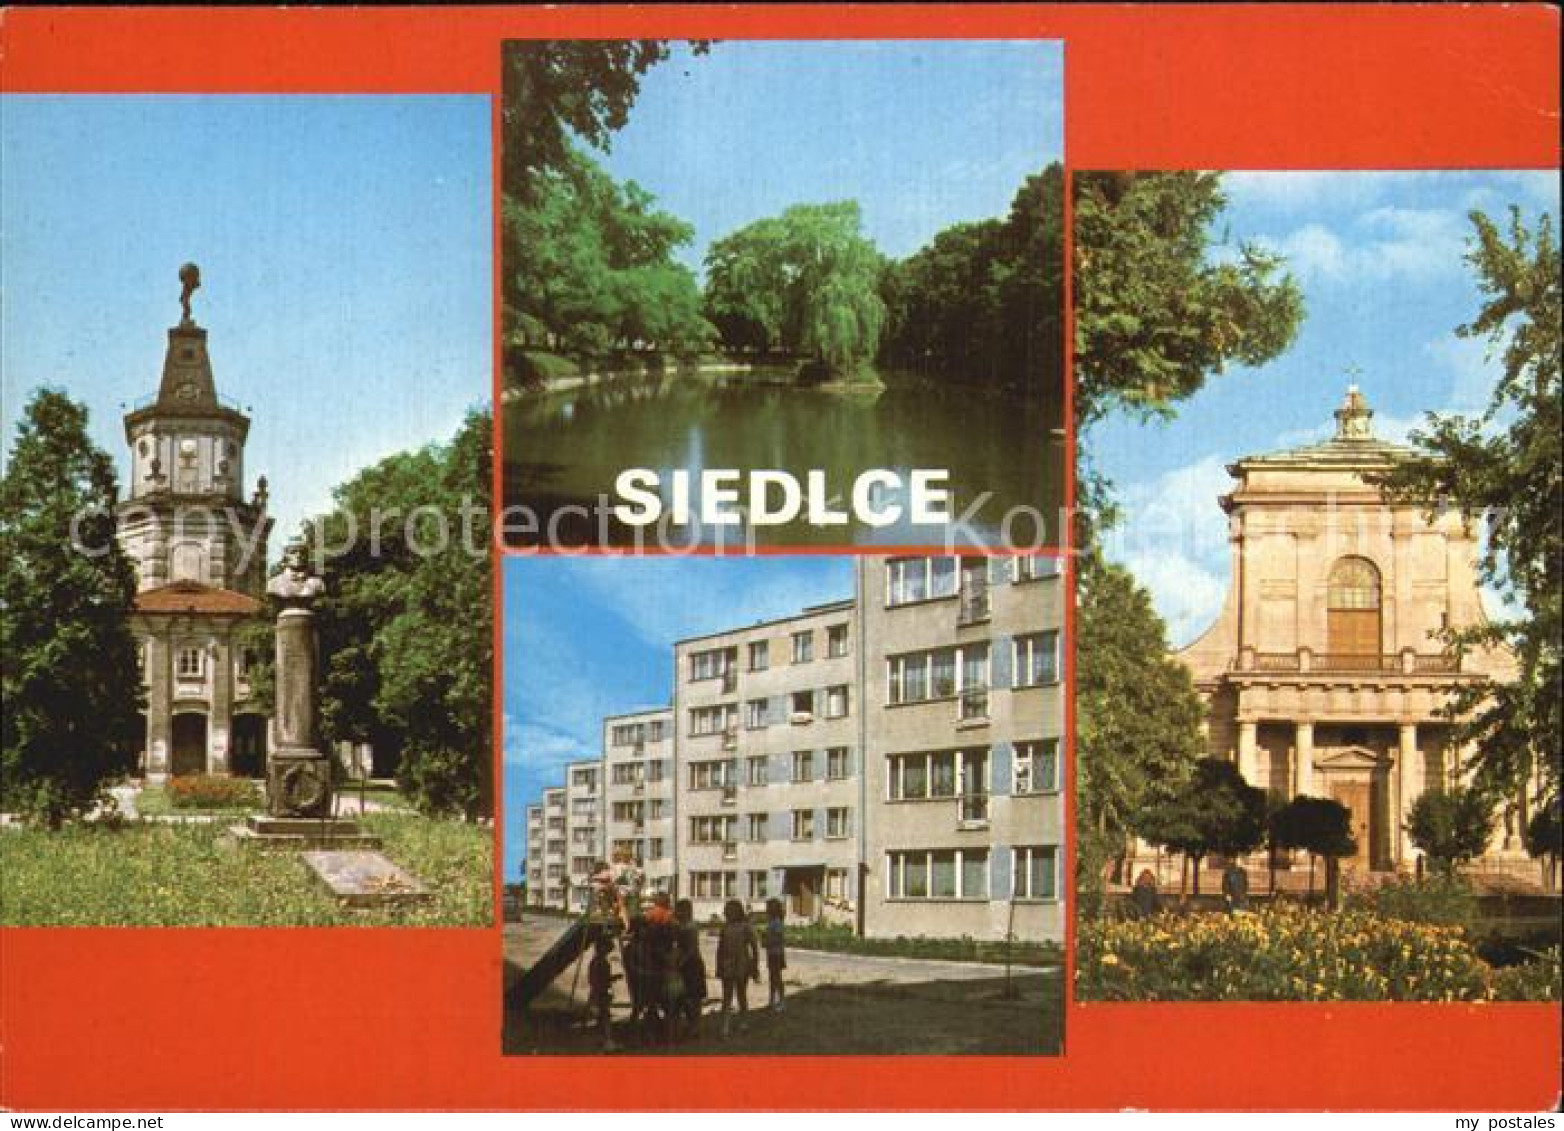 72568301 Siedlce  Siedlce - Poland